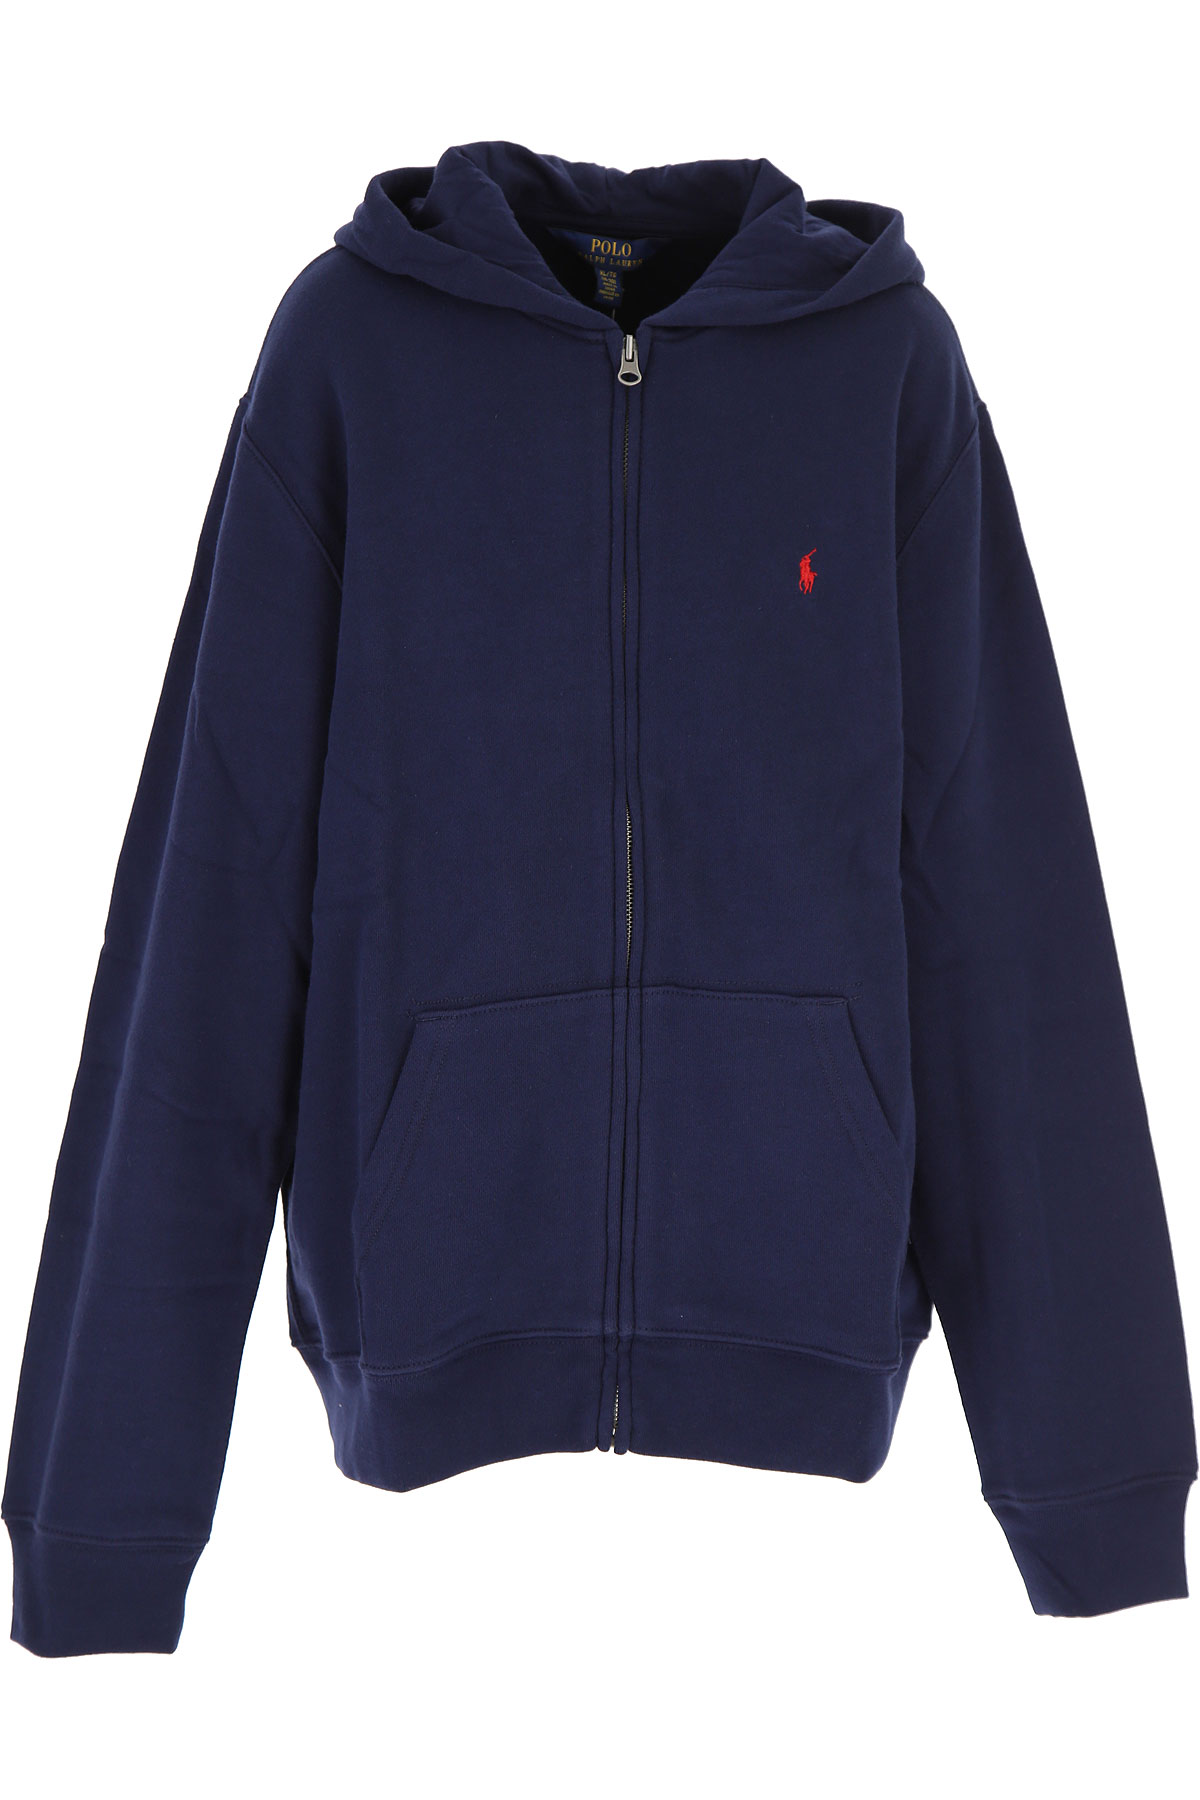 Ralph Lauren Kinder Sweatshirt & Kapuzenpullover für Jungen Günstig im Outlet Sale, Blau, Baumwolle, 2017, S XL